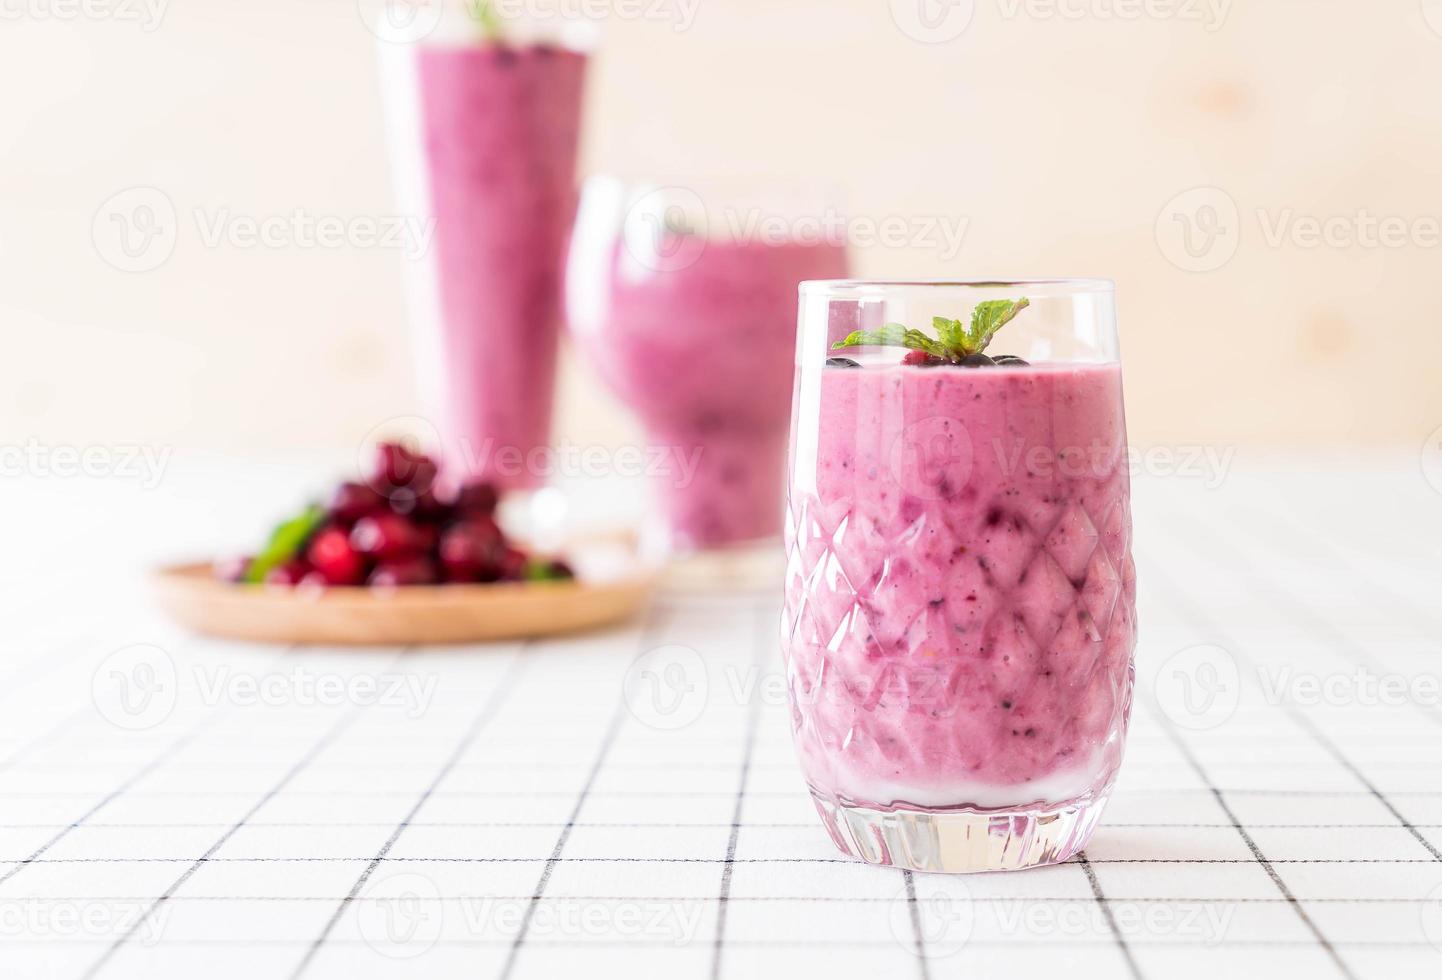 frutti di bosco misti con frullati di yogurt in tavola foto